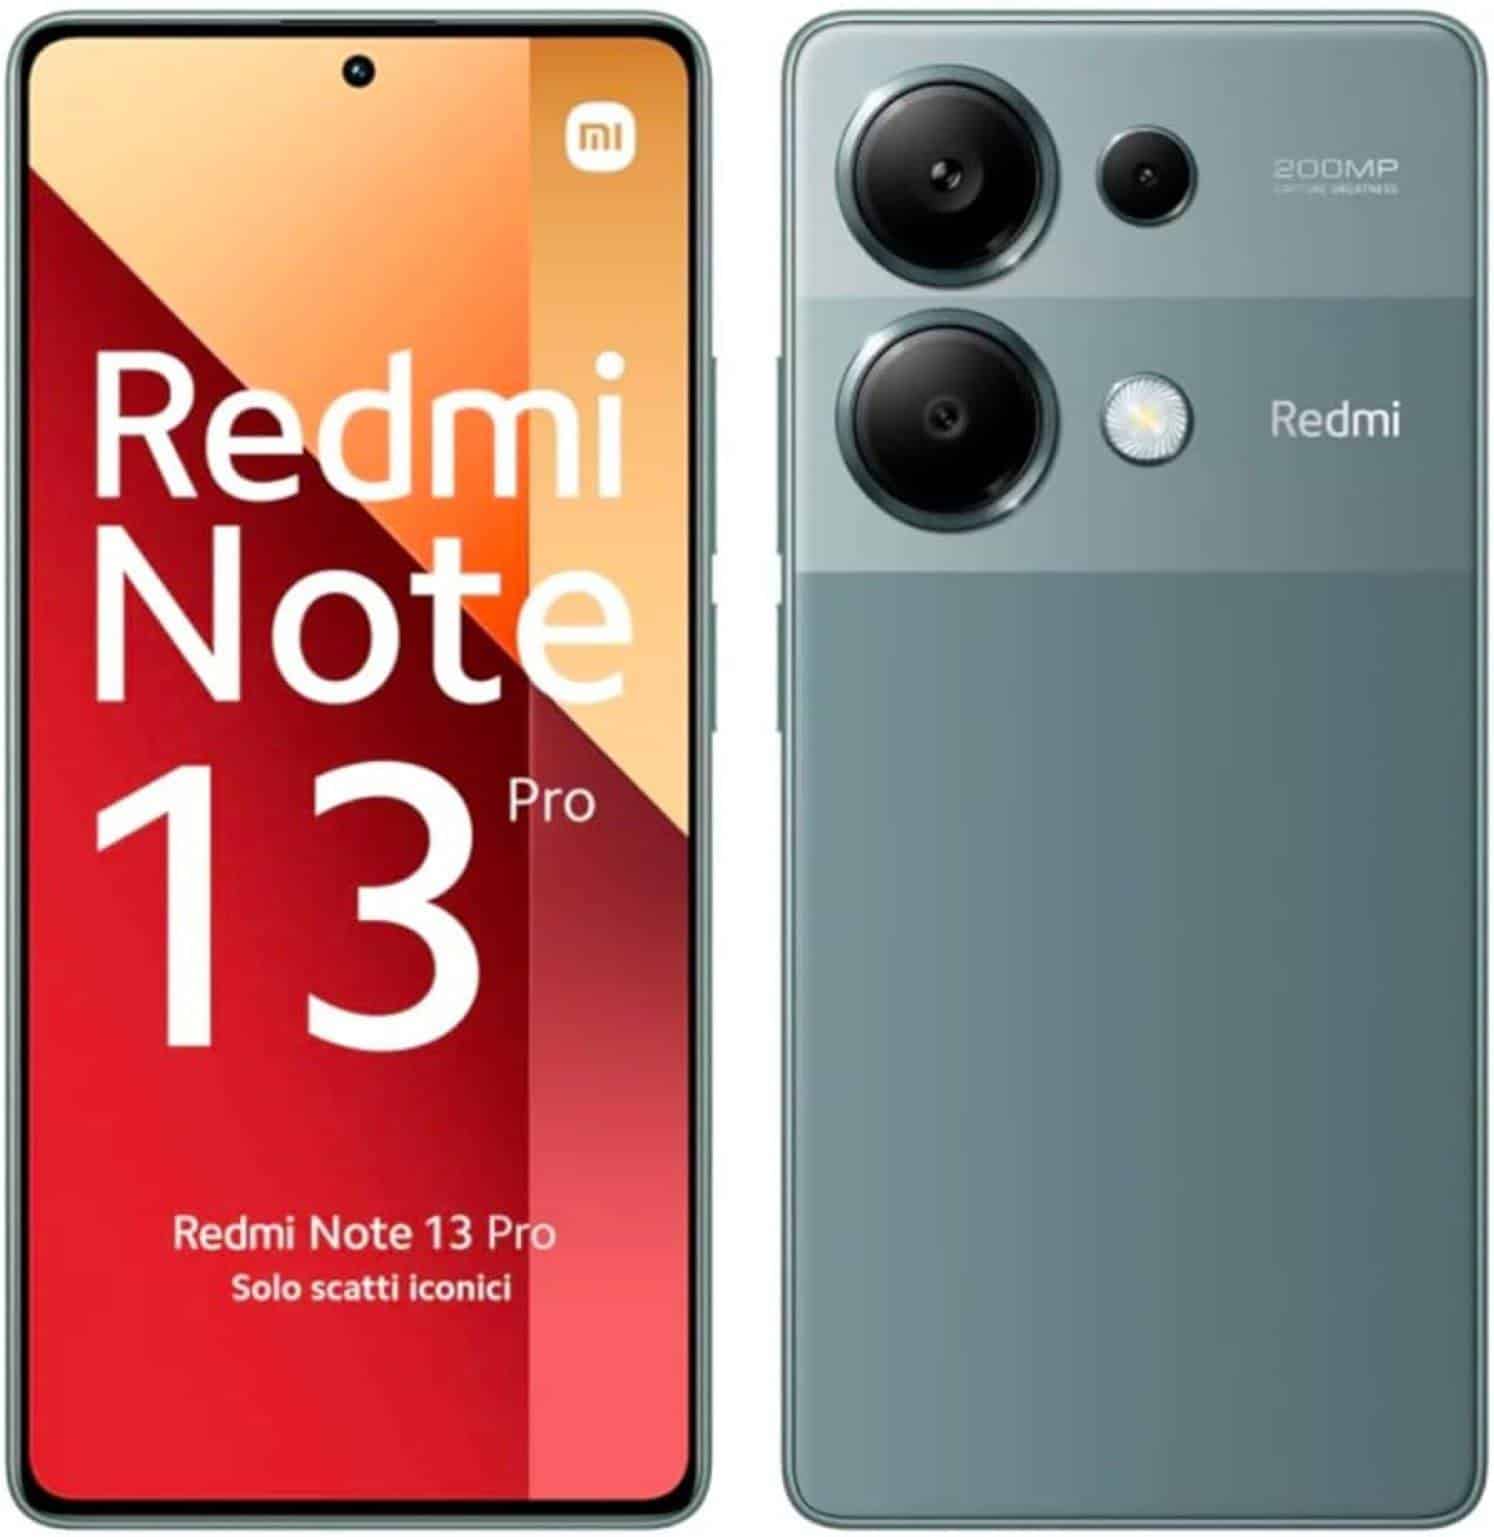 Características del smartphone Xiaomi Redmi Note 13 Pro